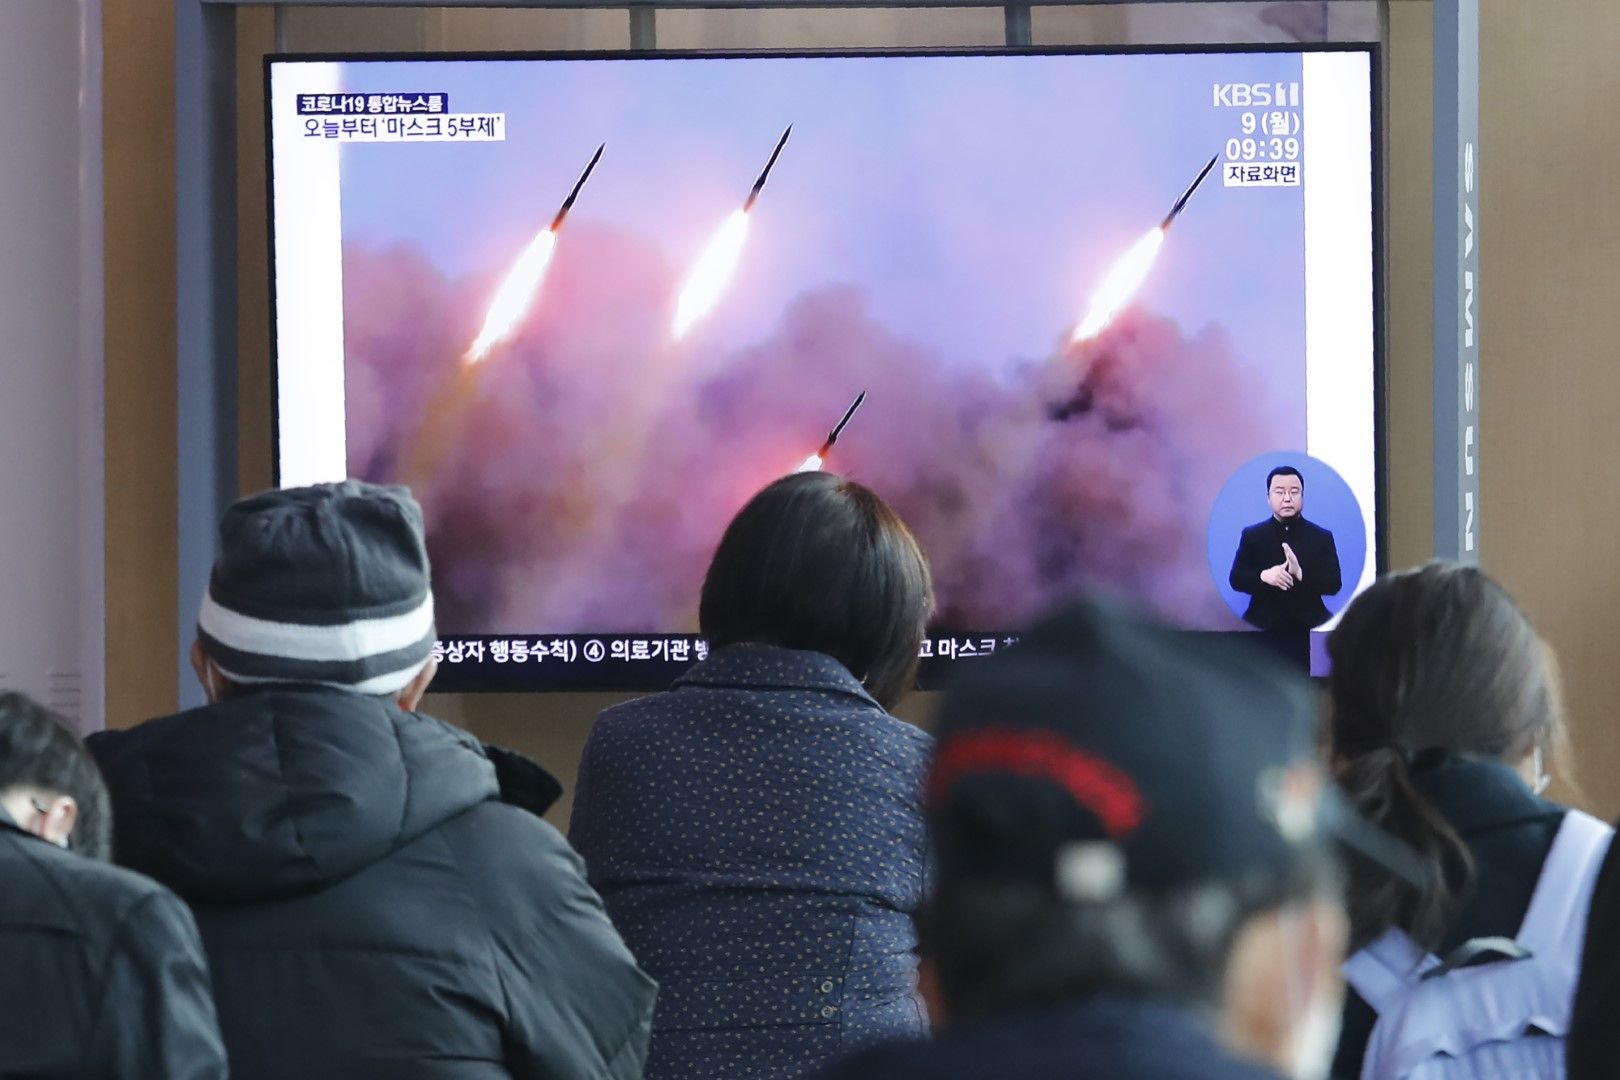 На 9 март корейци гледат по телевизията от централната гара в Сеул изстрелване на ракети от Северна Корея - самото изстрелване на ракетите е станало в миналото